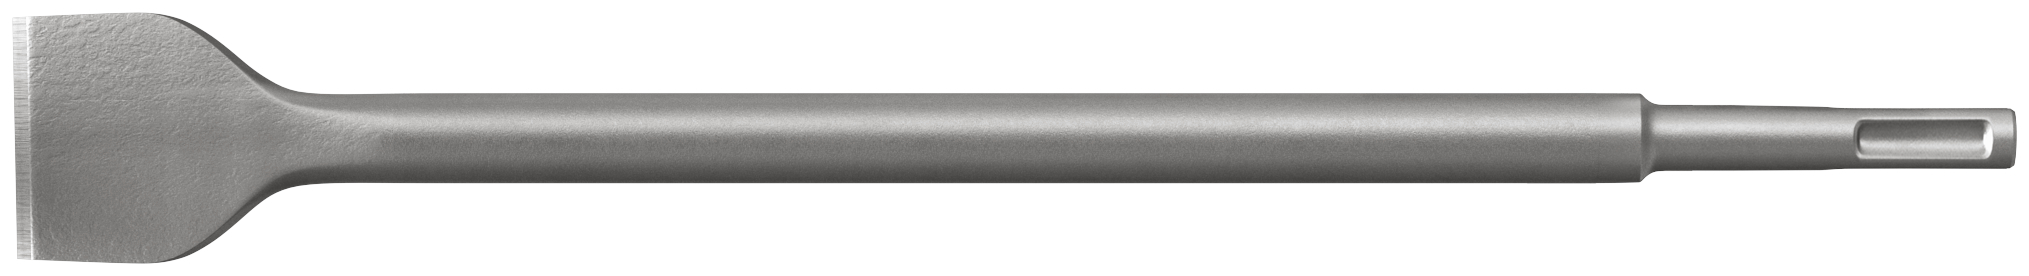 fischer Punta martelli perforatori SDS Plus I M-Spat 40-250 (1 Pz.) Scalpello ad alte prestazioni con attacco SDS Plus e SDS Max fie1625